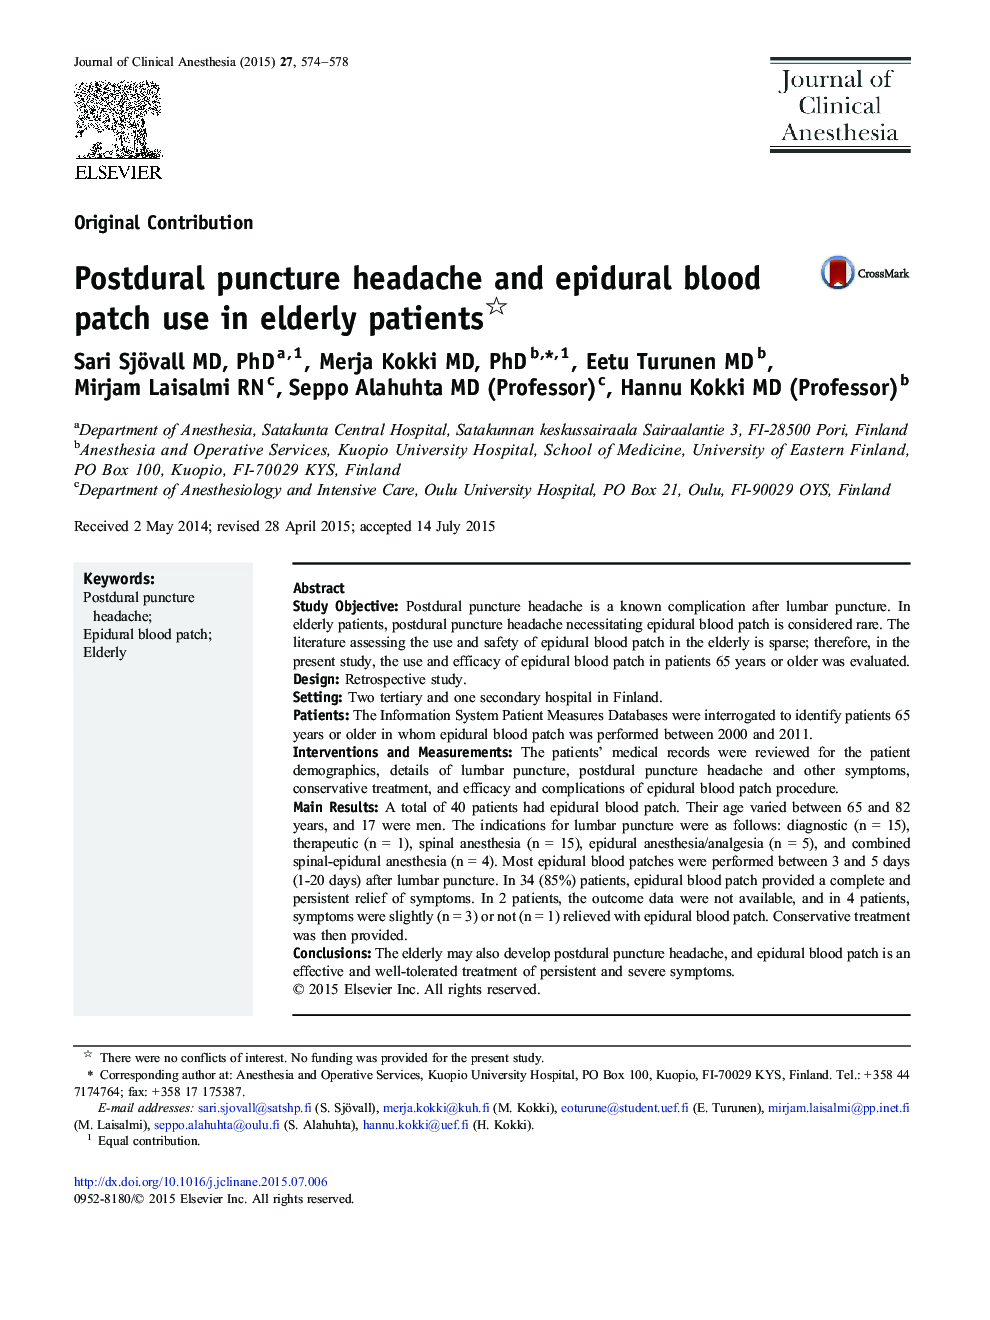 استفاده از پاتوژن خون اپیدورال در بیماران مسن 